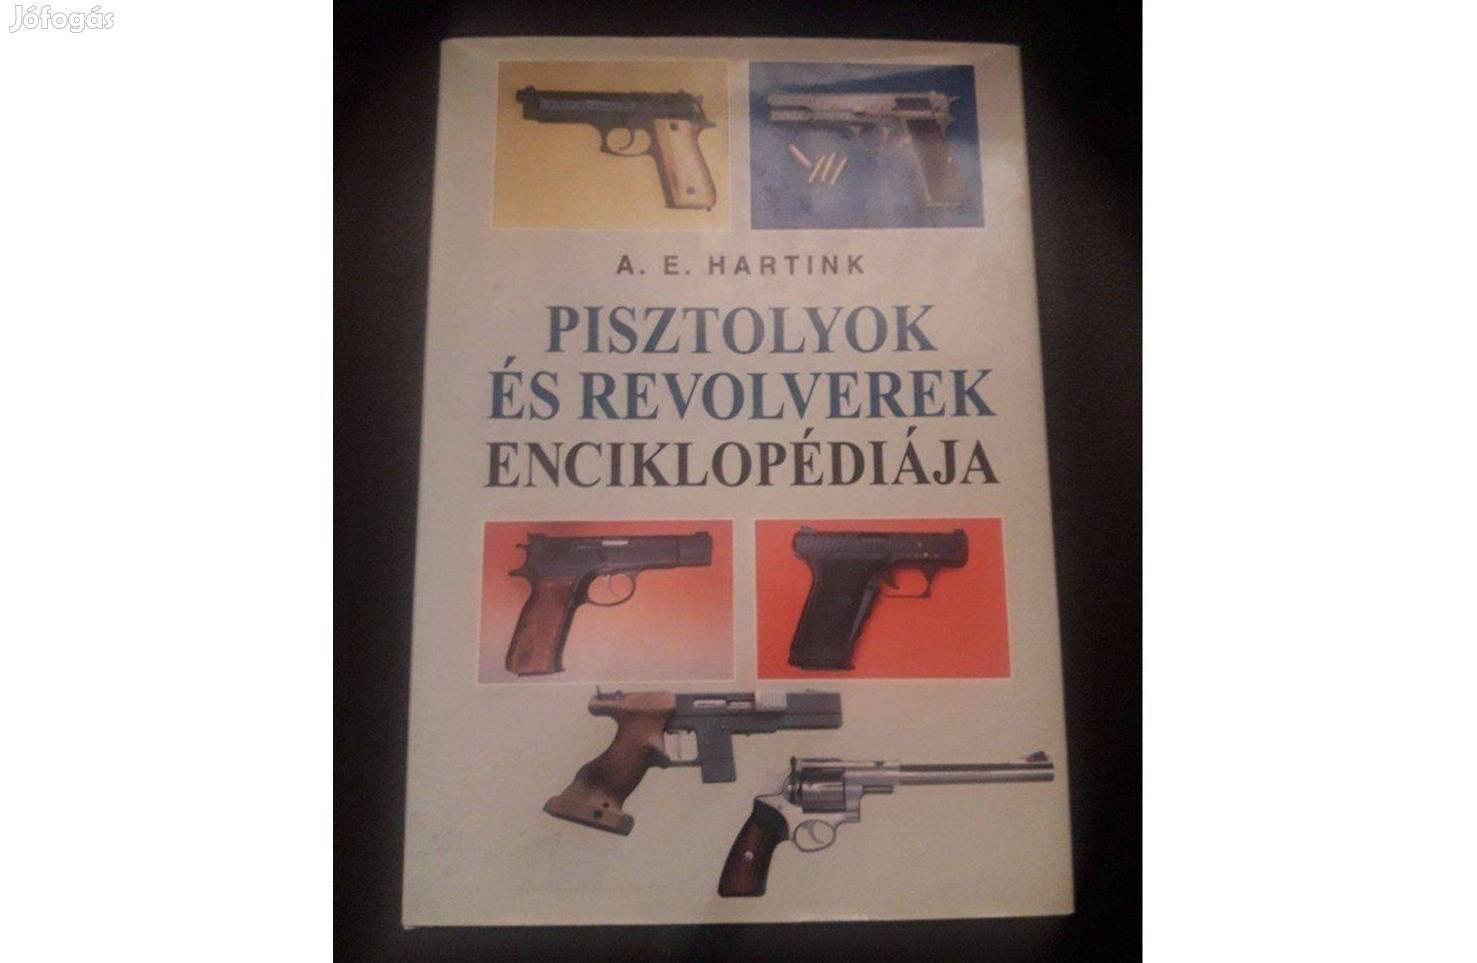 A. E. Hartink: Pisztolyok és revolverek szakkönyv